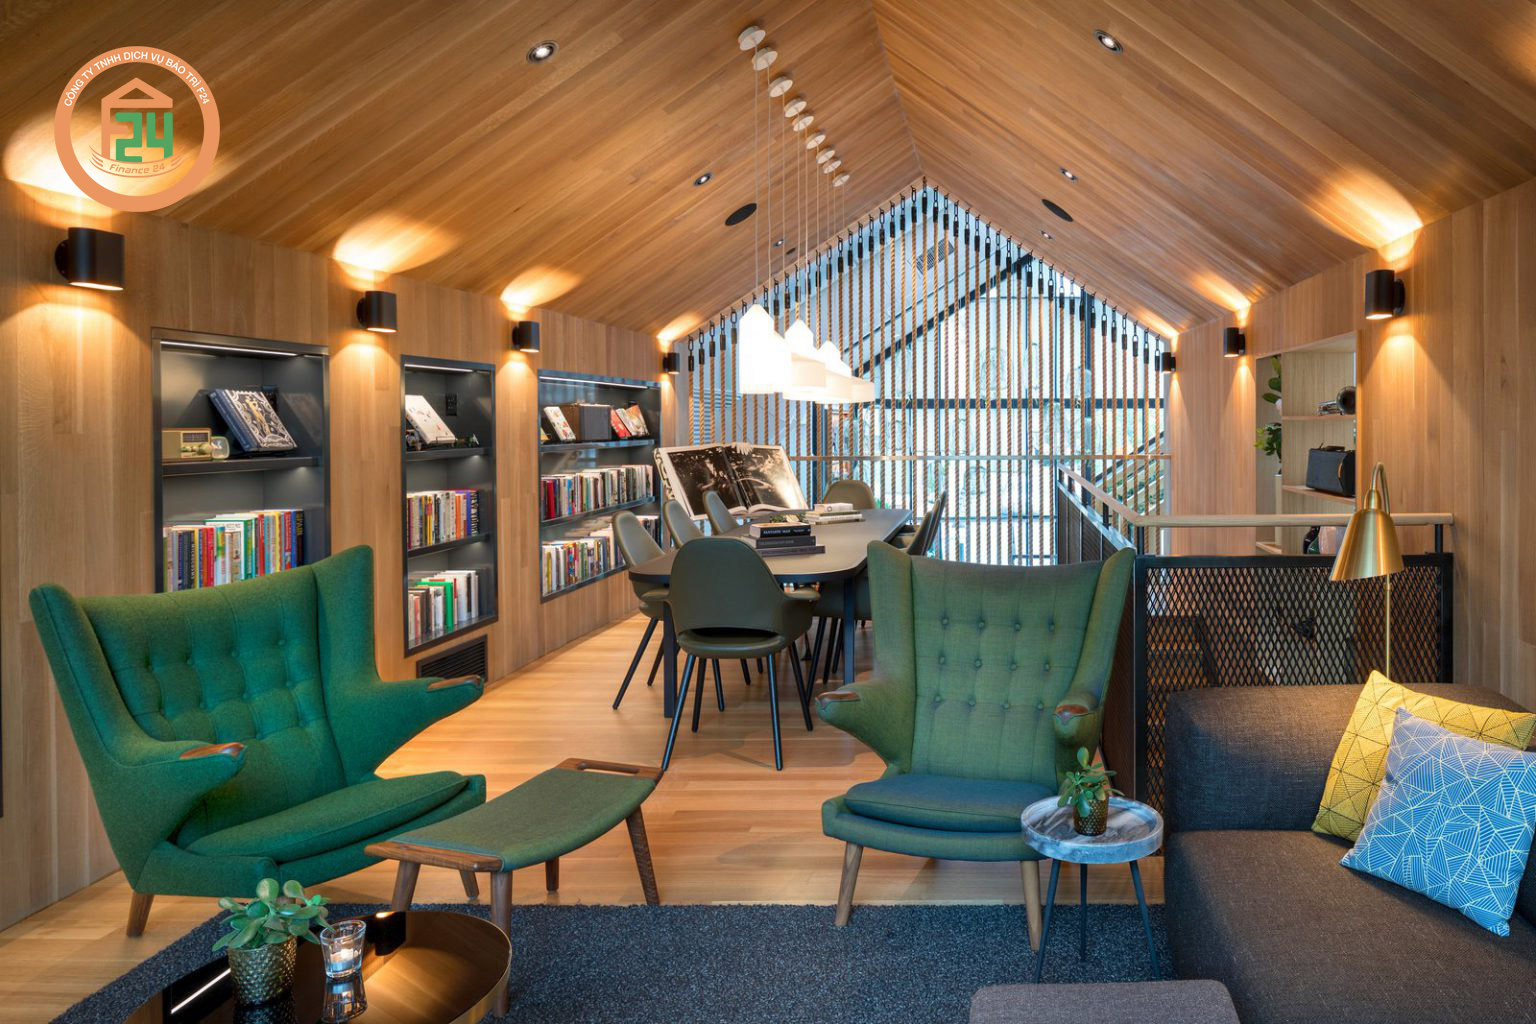 80 - Ý tưởng thiết kế nội thất quán cafe với không gian mở linh hoạt